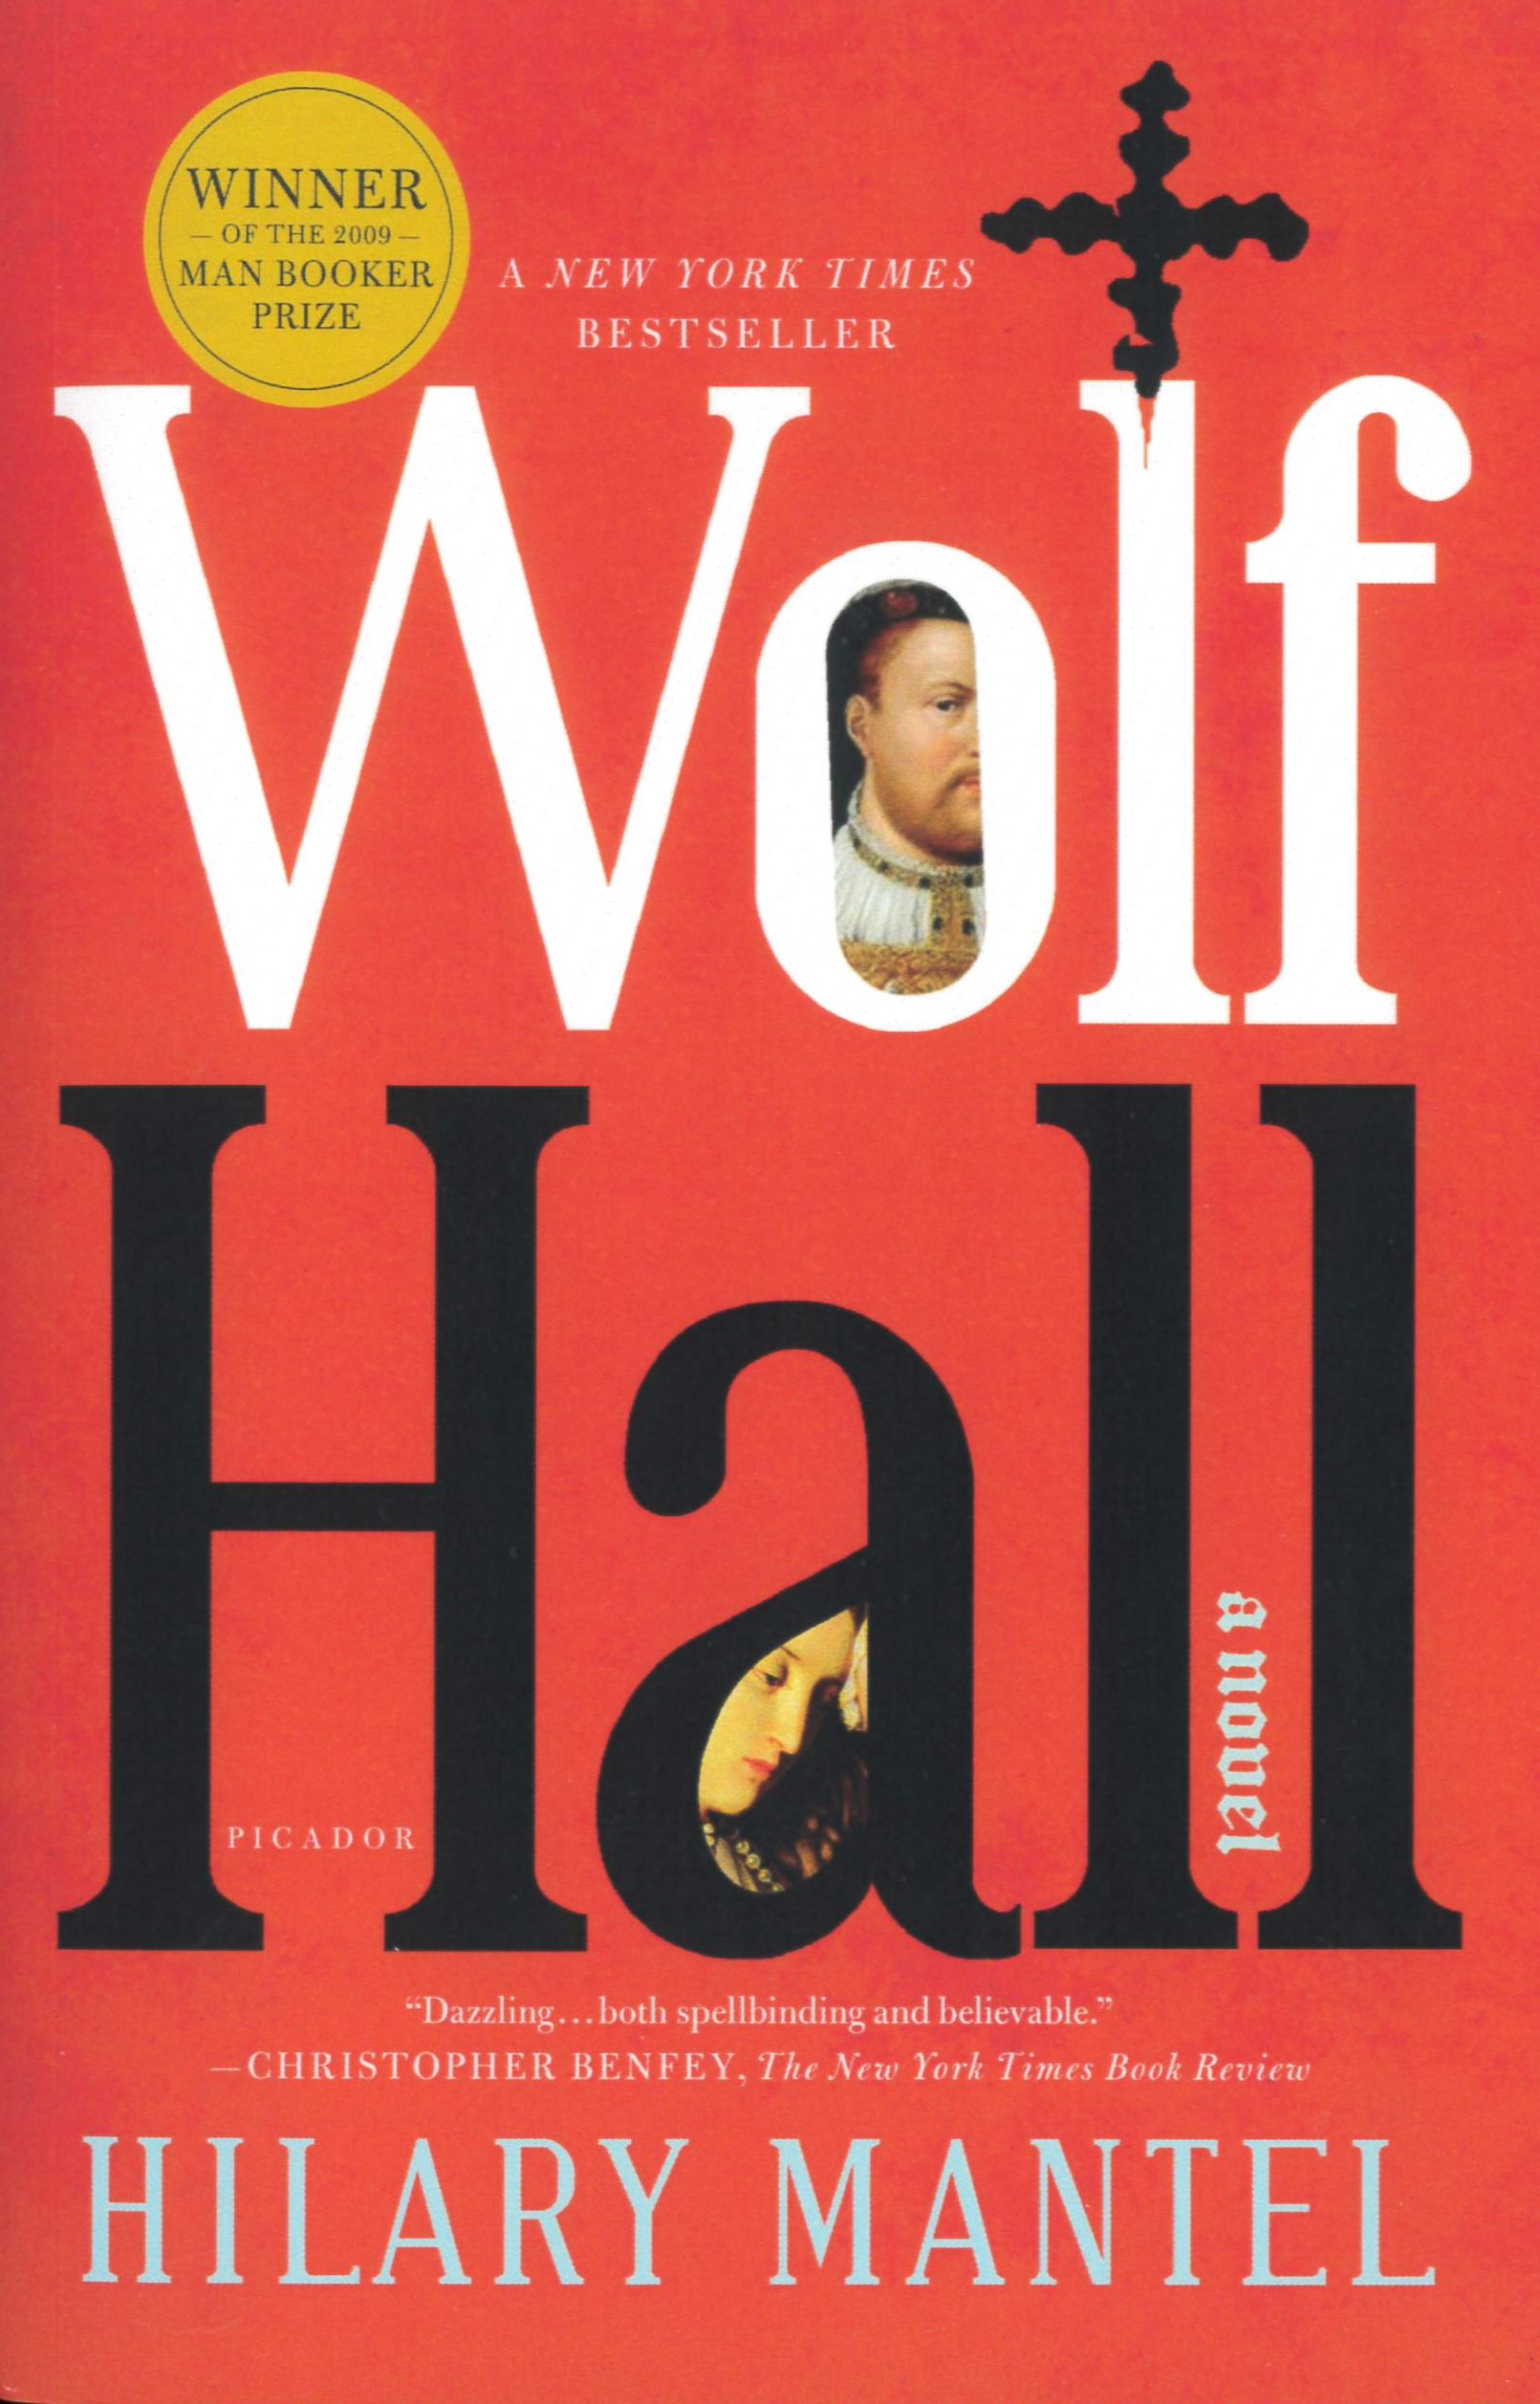 Wolf Hall : a novel /